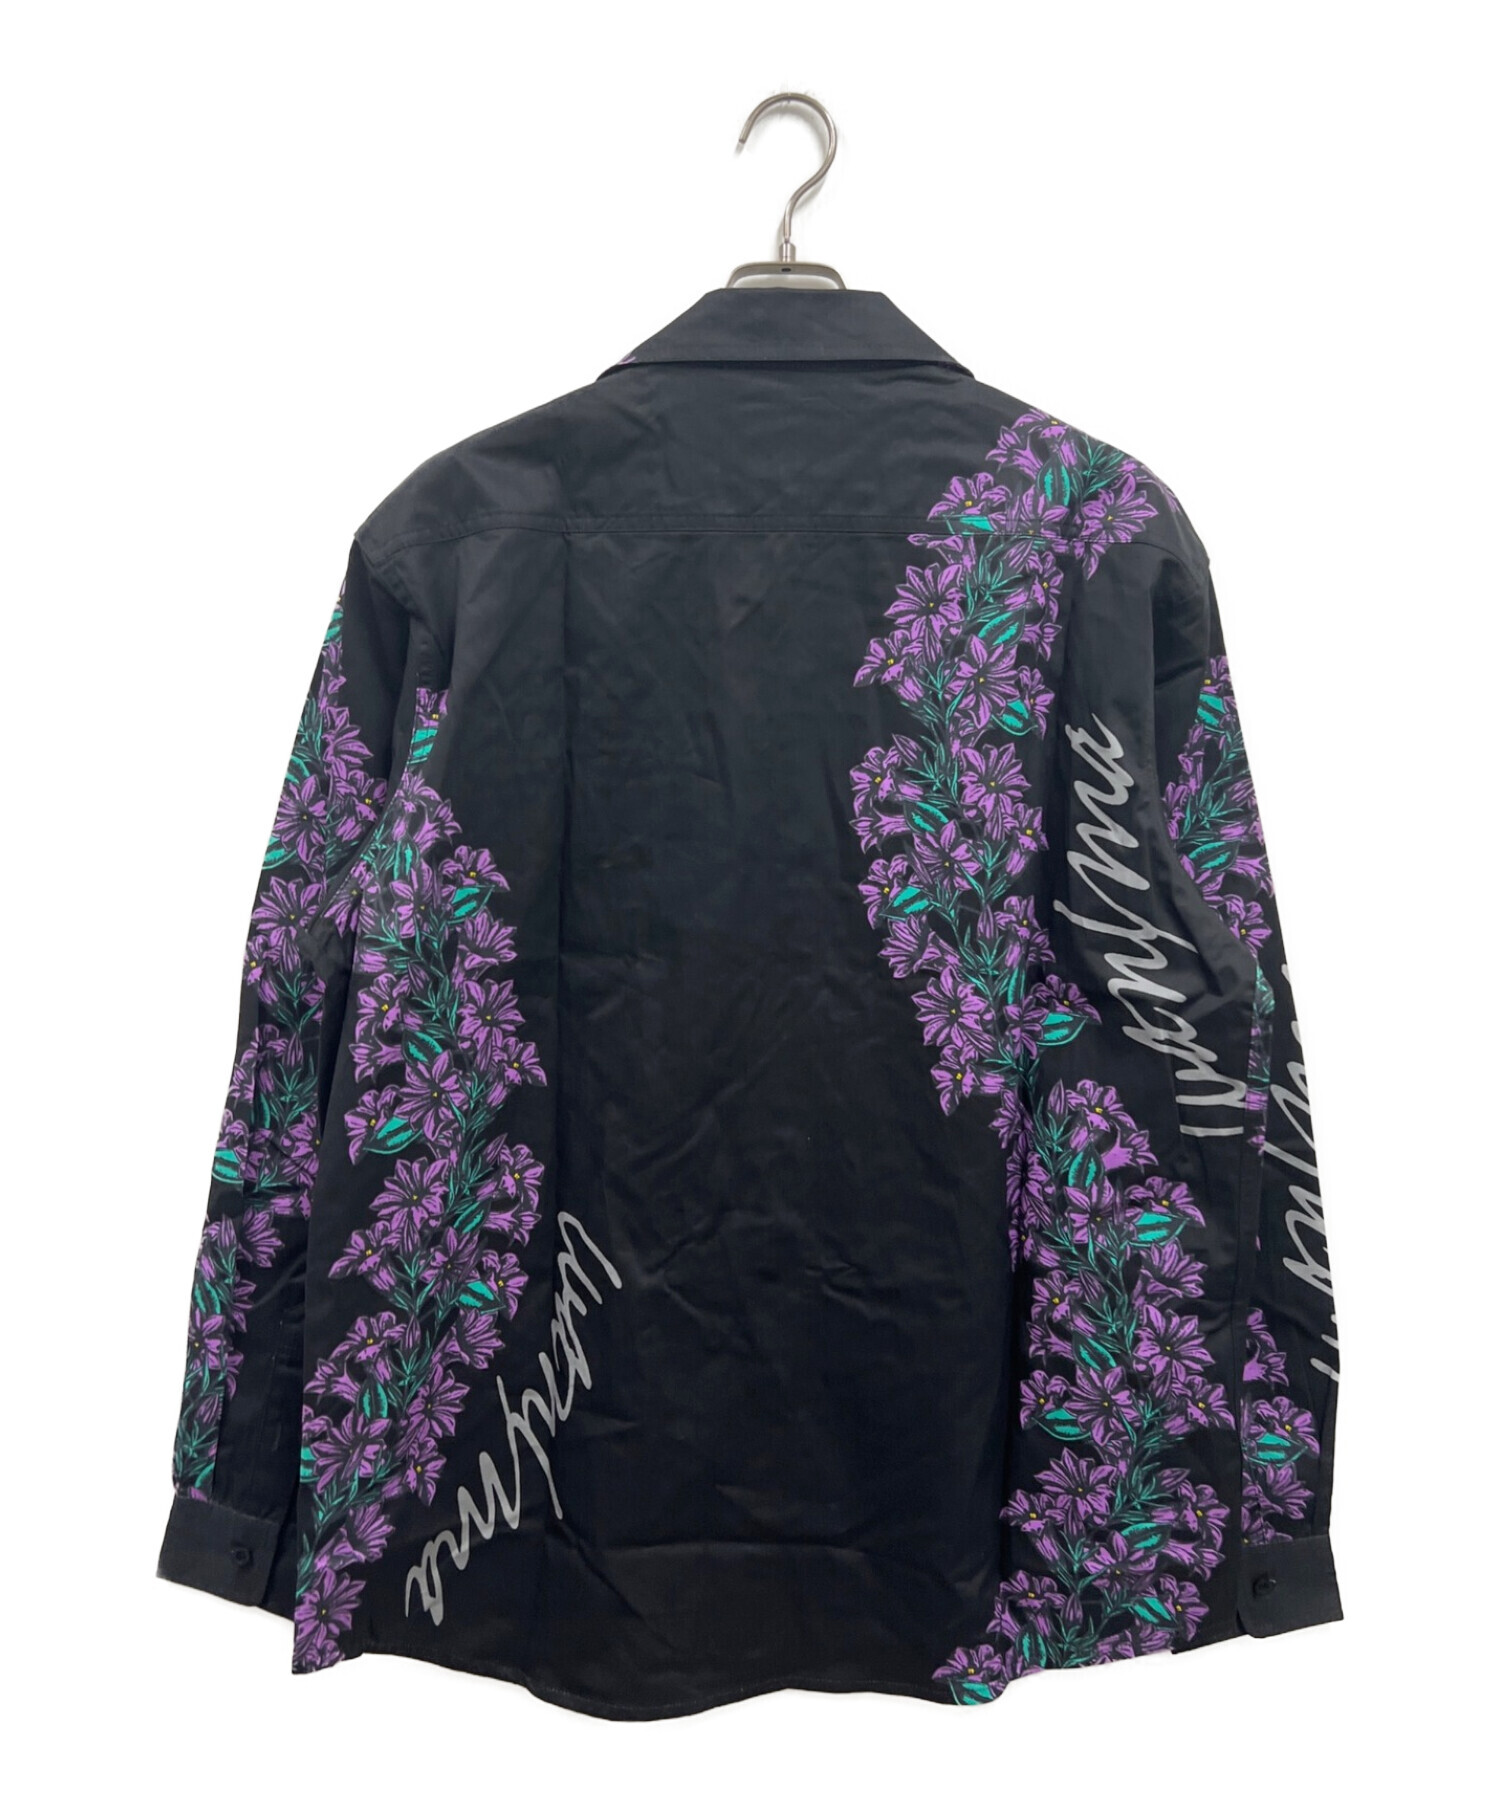 LEFLAH (レフラー) WANIMA (ワニマ) りんどうロングスリーブシャツ ブラック サイズ:XL 未使用品